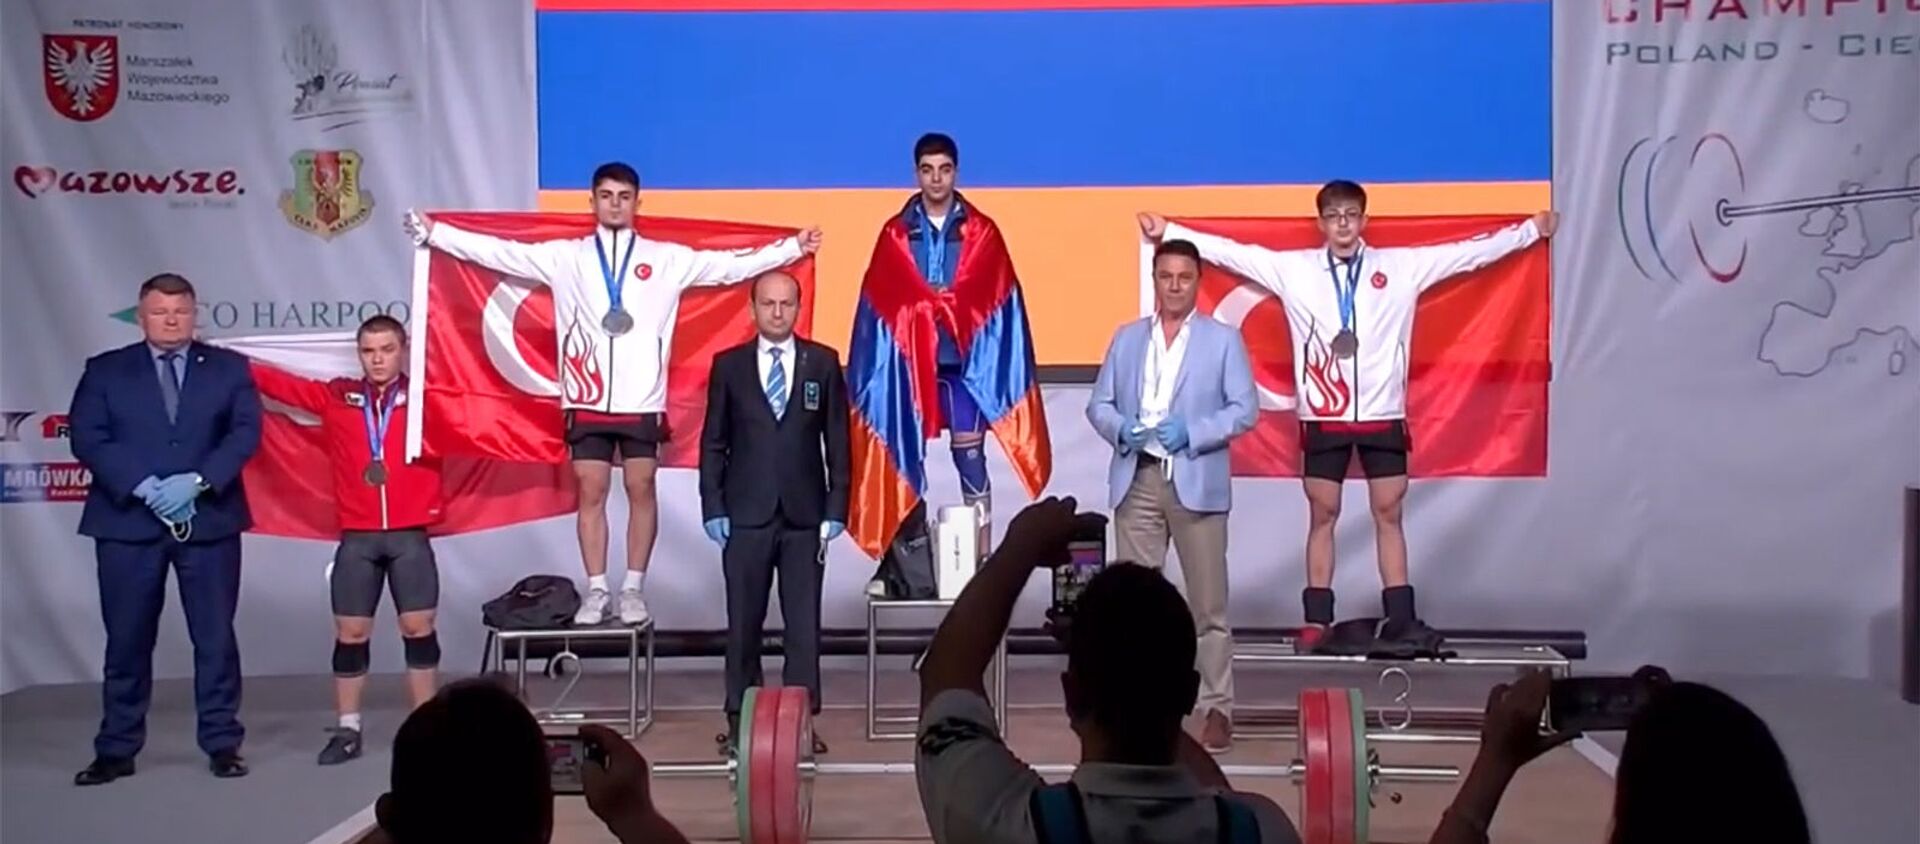 Спортсмен из Армении Рафик Минасян завоевал золотую медаль на юниорском чемпионате Европы по тяжелой атлетике в Польше - Sputnik Արմենիա, 1920, 22.08.2021